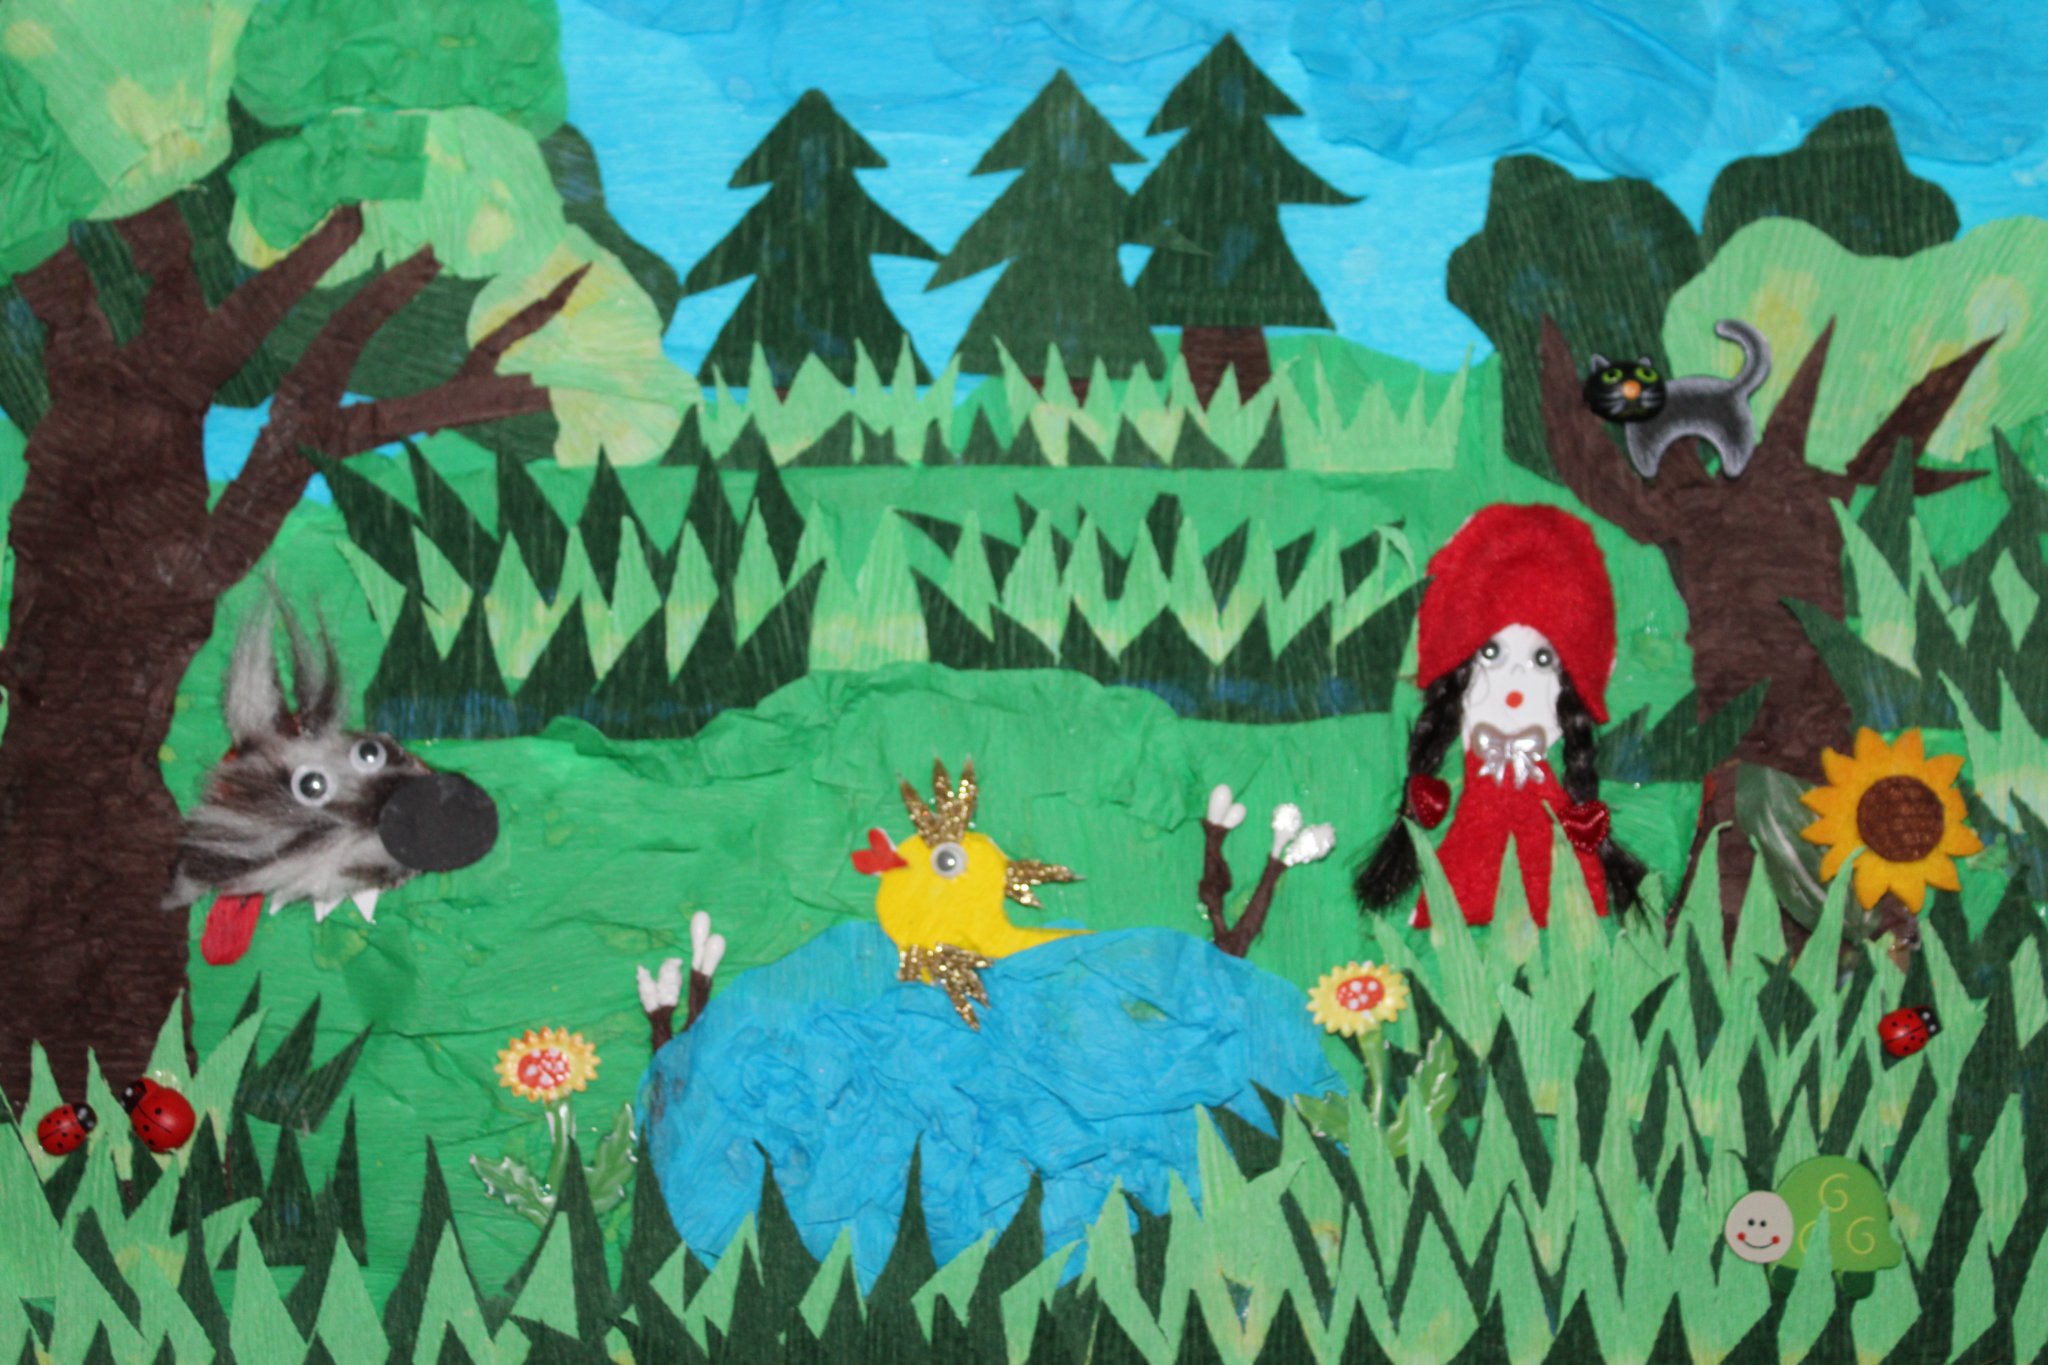 Obraz klejony z różnych elementów przedstawia wilka czerwonego kapturka, kota na drzewie oraz złotą rybkę w koronie. Wszyscy są w lesie, rybka pływa w stawie. Na trawce, czerwone biedronki.